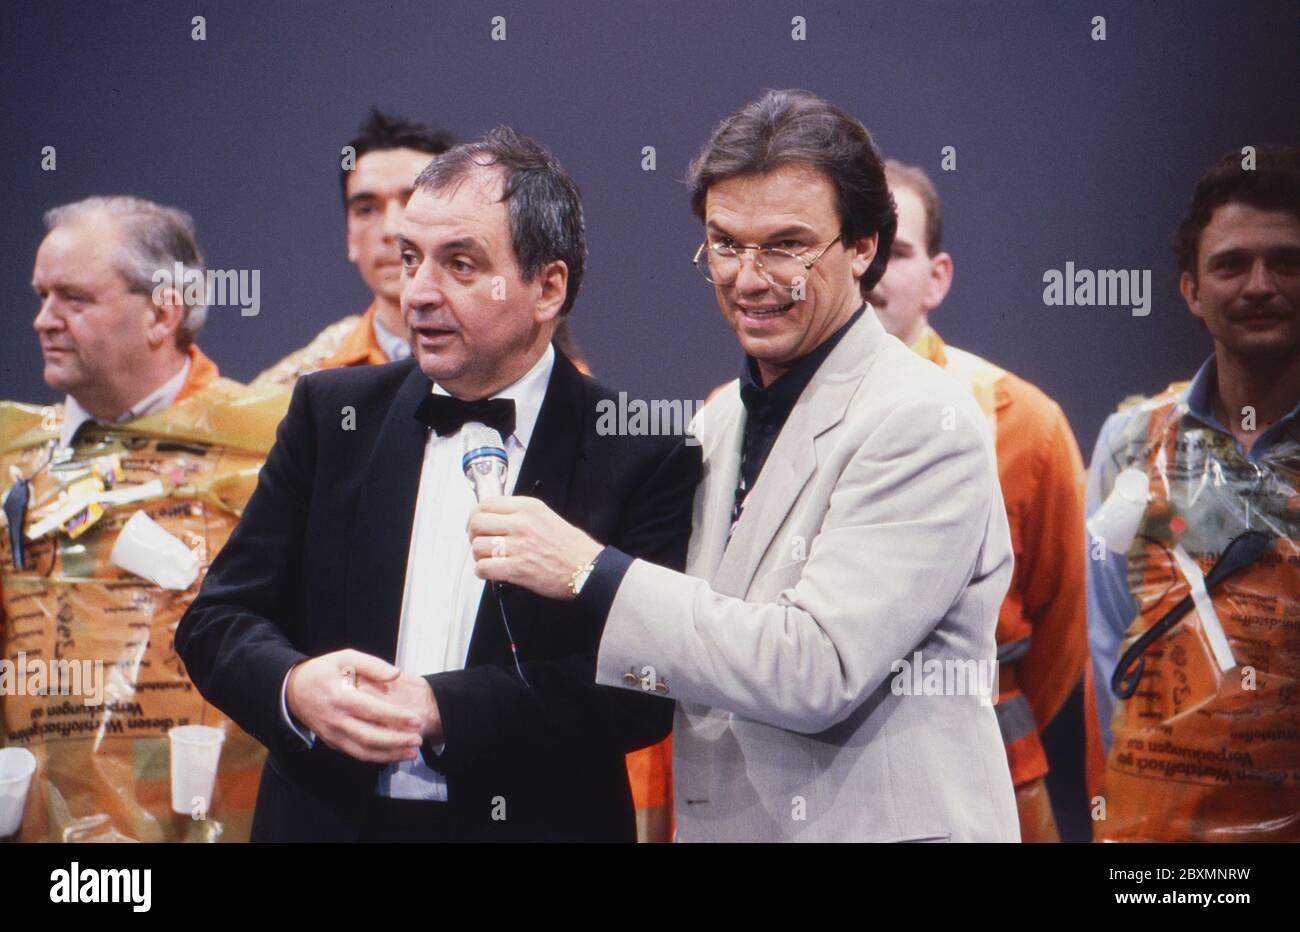 Wetten dass, Spielshow, Deutschland 1993, Gast Bundesumweltminister Klaus Töpfer und Moderator Wolfgang Lippert Foto Stock